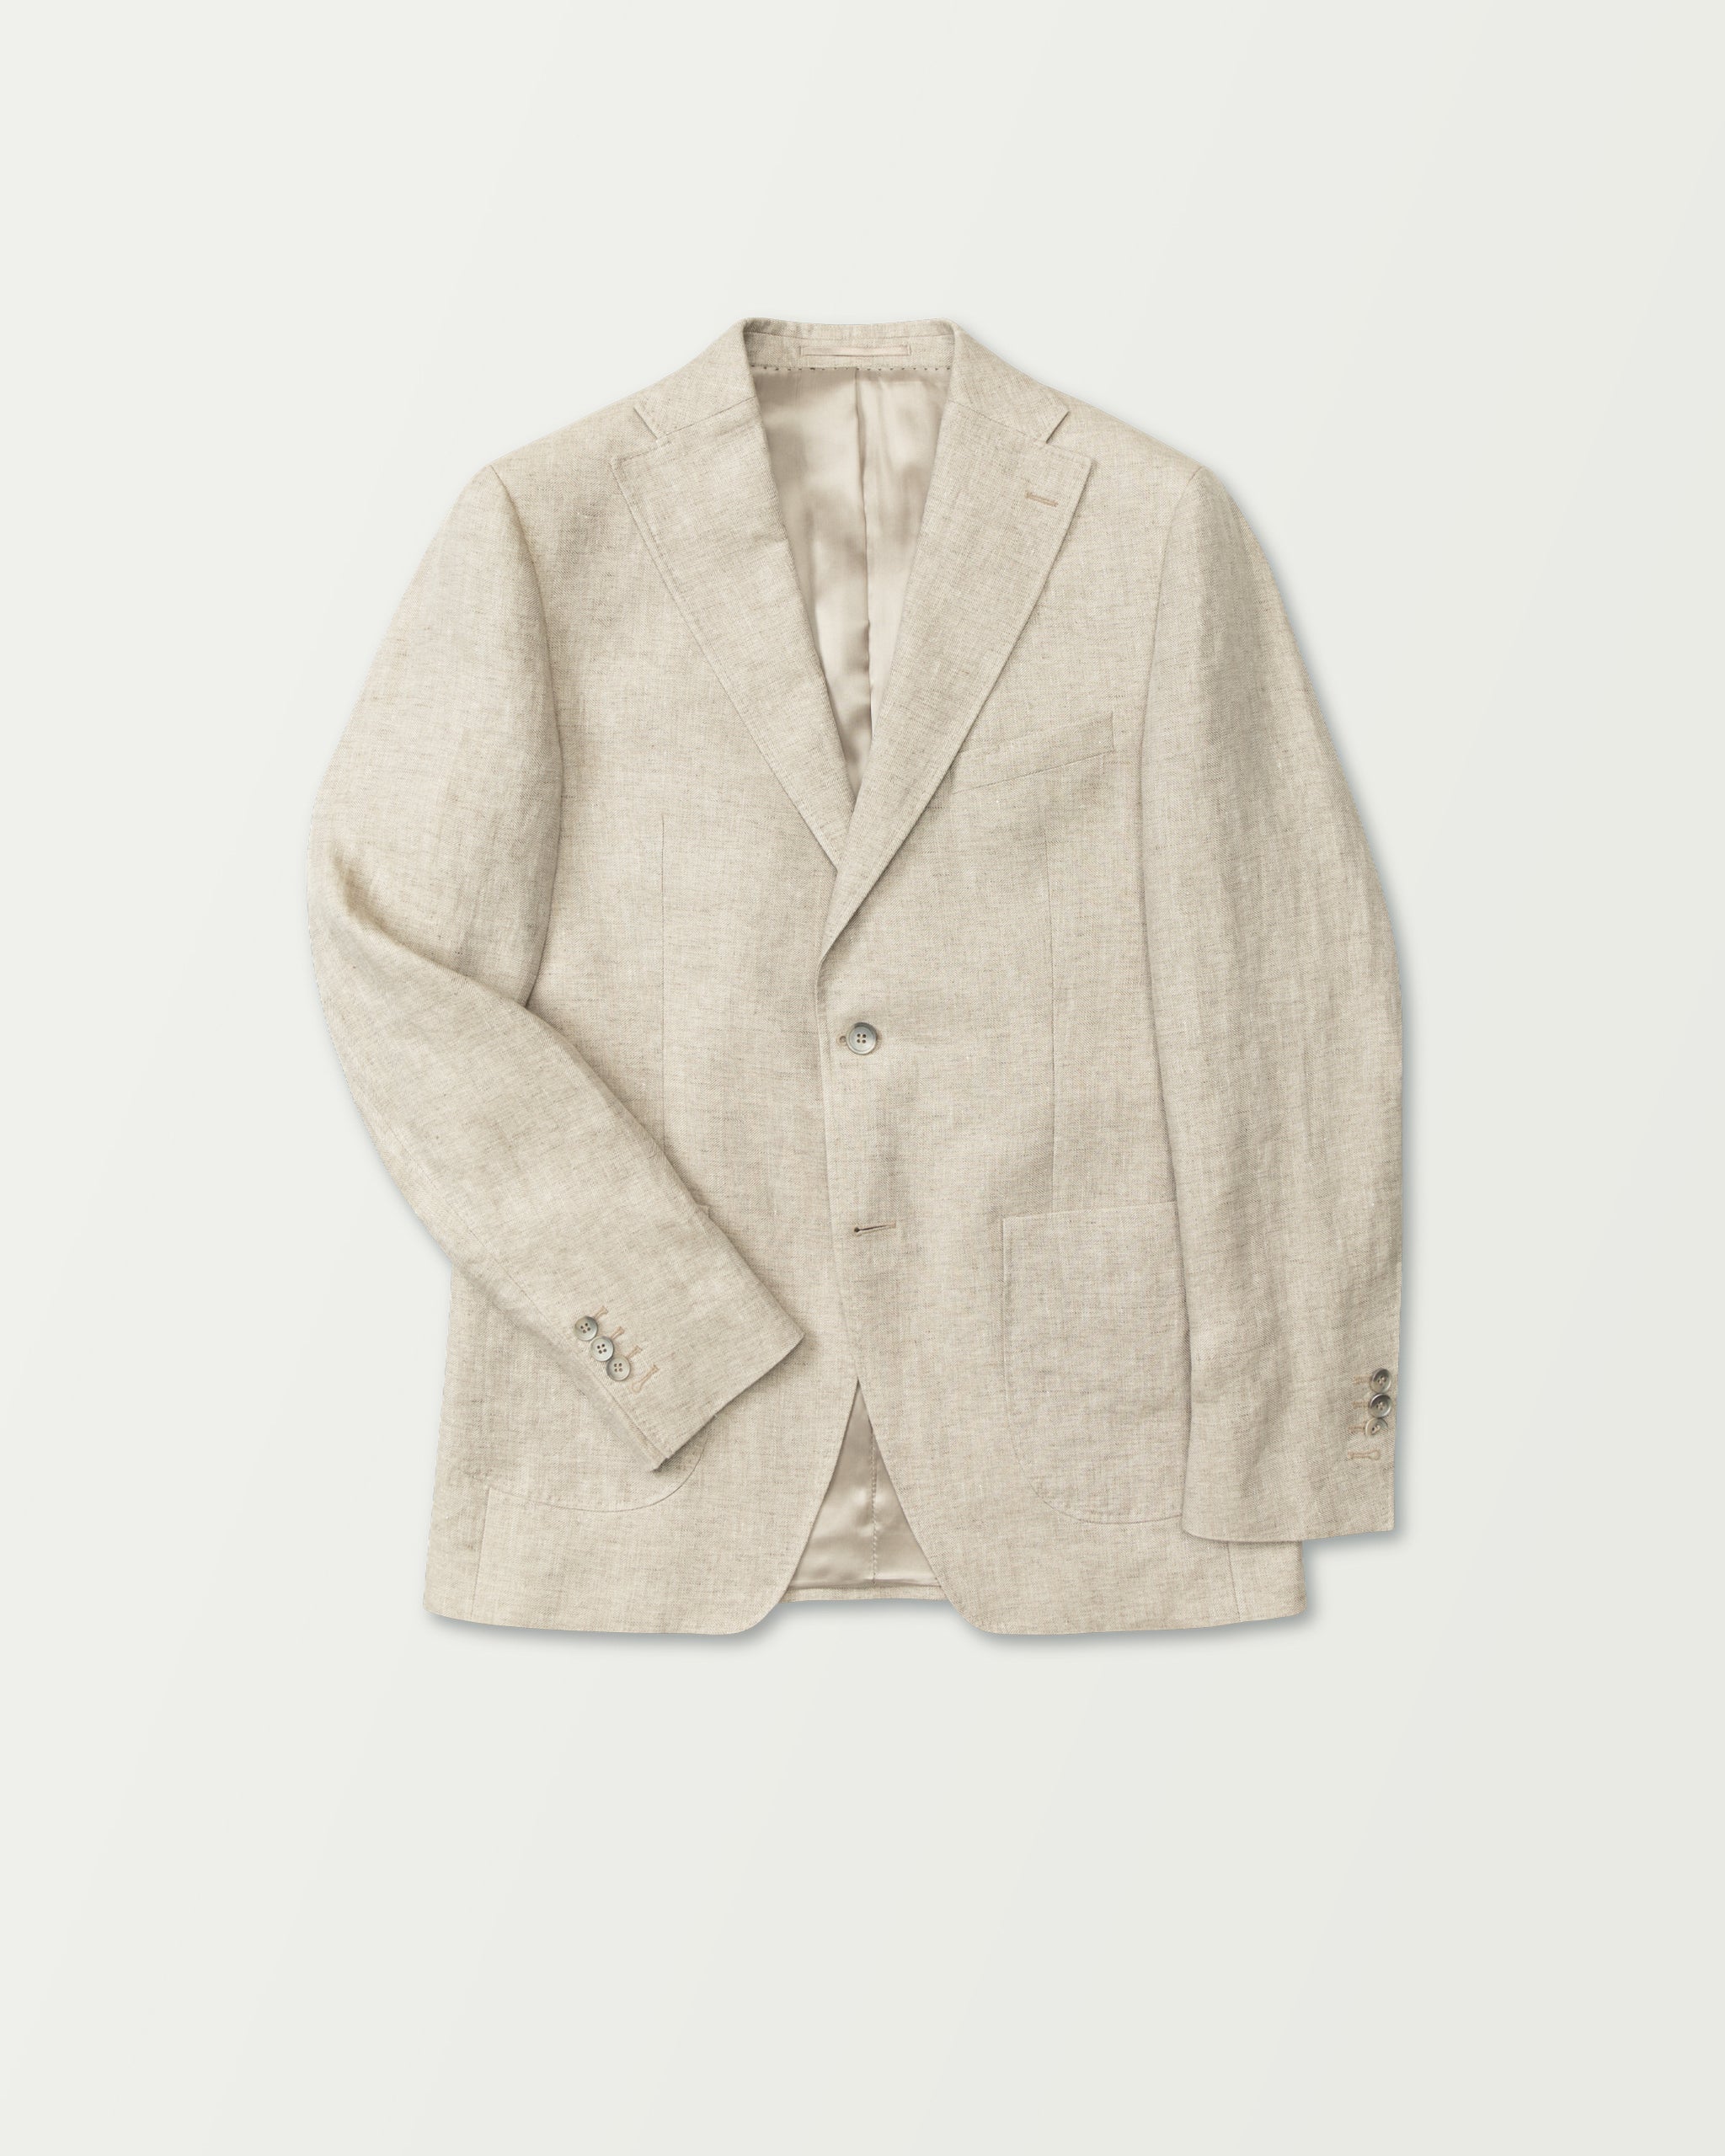 Turo - Modern Linen Suit in Light Beige Jacket